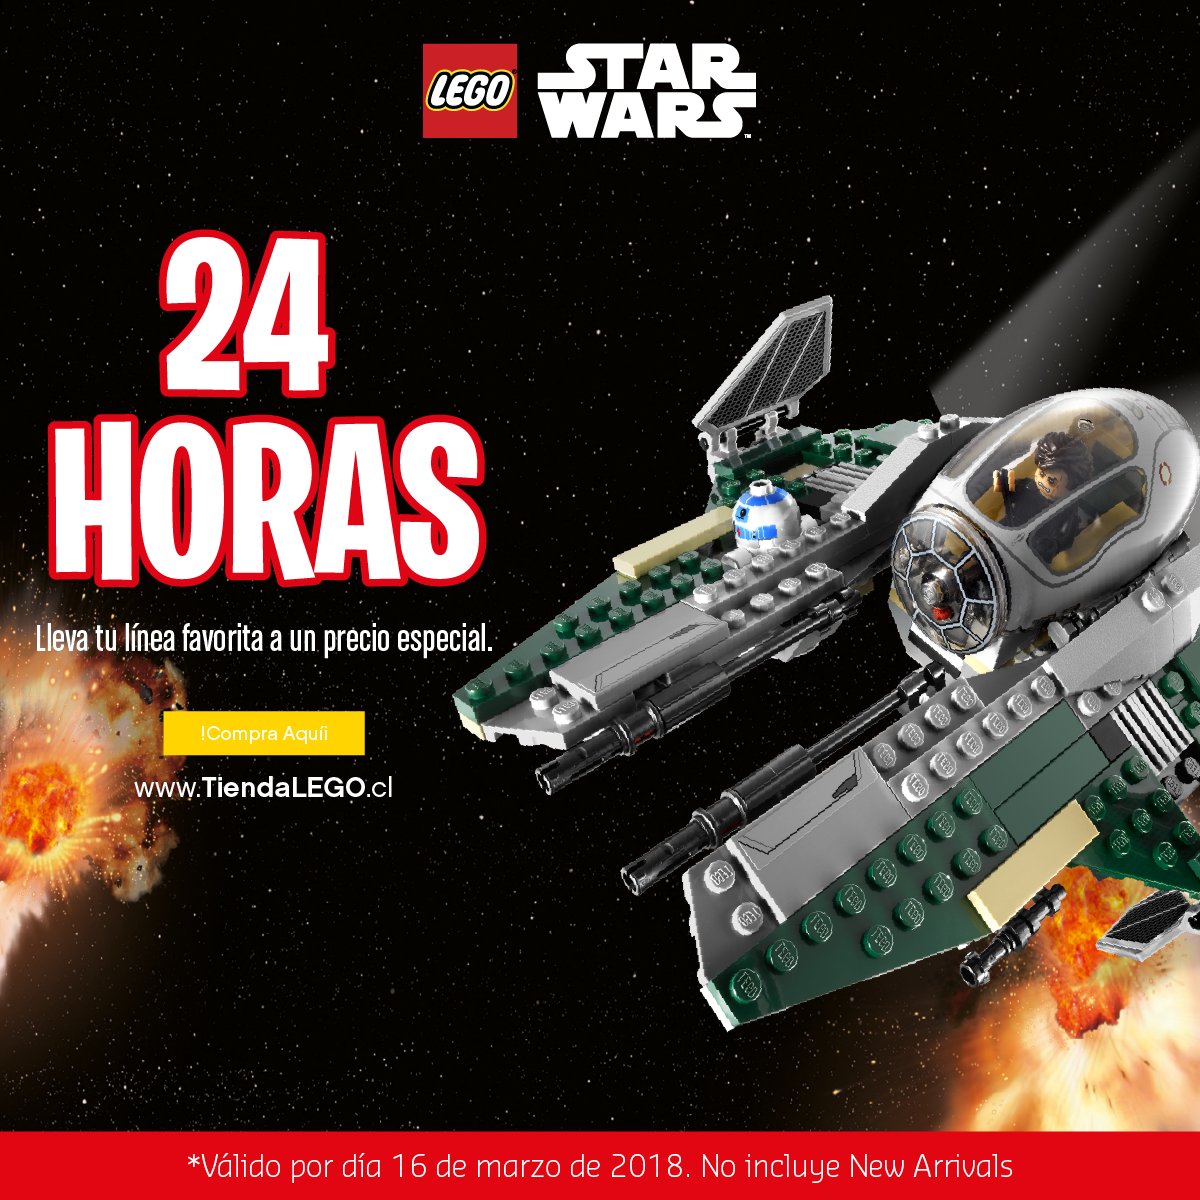 Proporcional Misterio Llevando Tienda LEGO Chile on Twitter: "Llegó una promoción directo desde una  galaxia muy, muy lejana: ¡No dejes pasar sets de LEGO #StarWars a precio  especial sólo por hoy en https://t.co/5L7C3YKQrQ! https://t.co/4C8mNKdCJV  https://t.co/D5yZnEmD8a" /